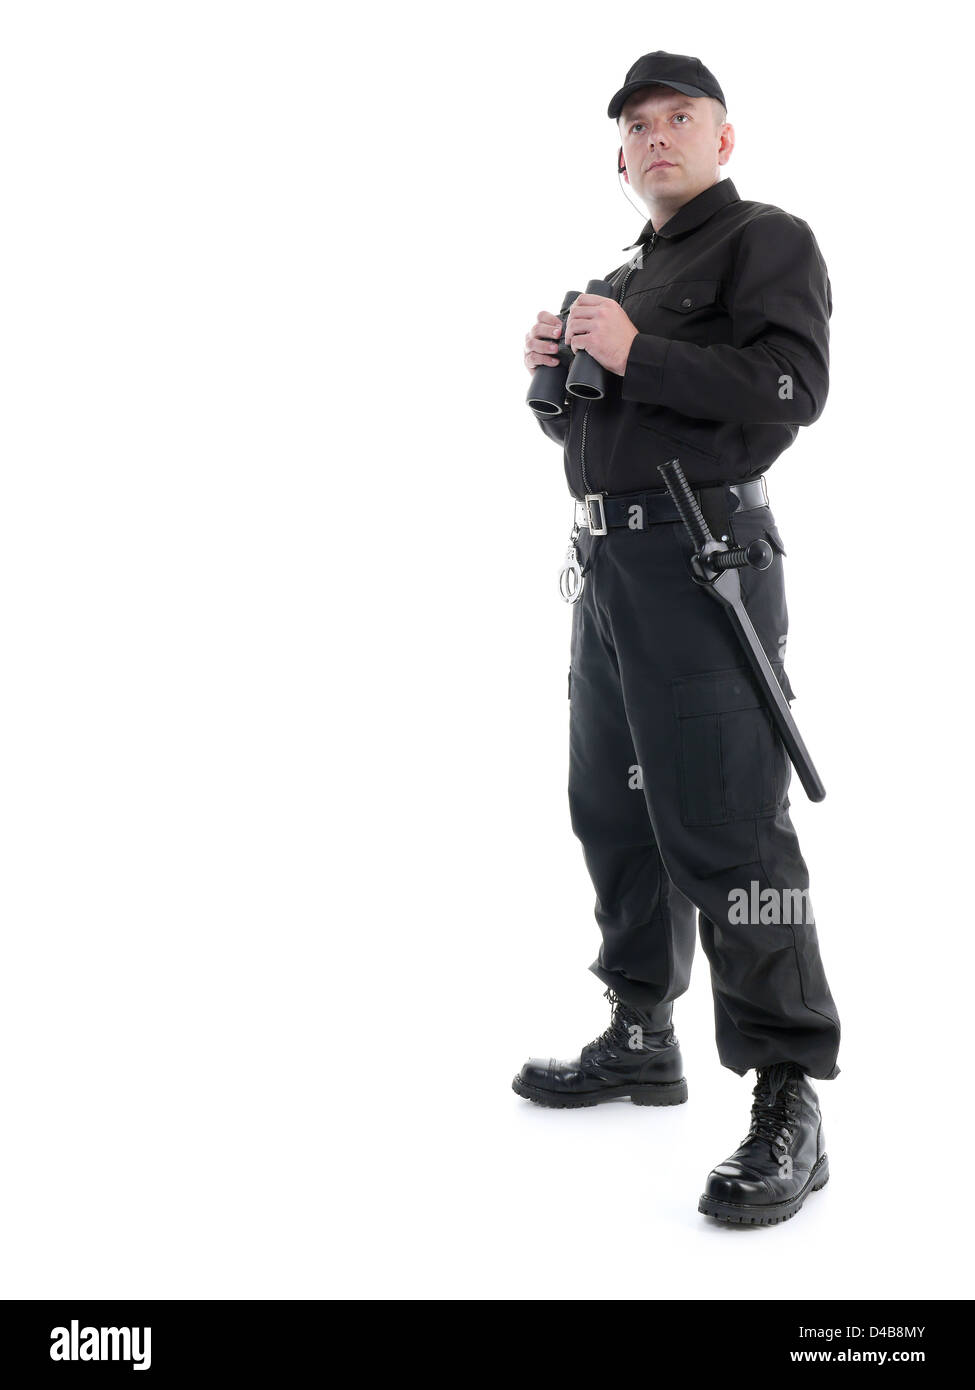 Mann vom Sicherheitsdienst tragen schwarze uniform stehend mit Fernglas, geschossen auf weiß Stockfoto